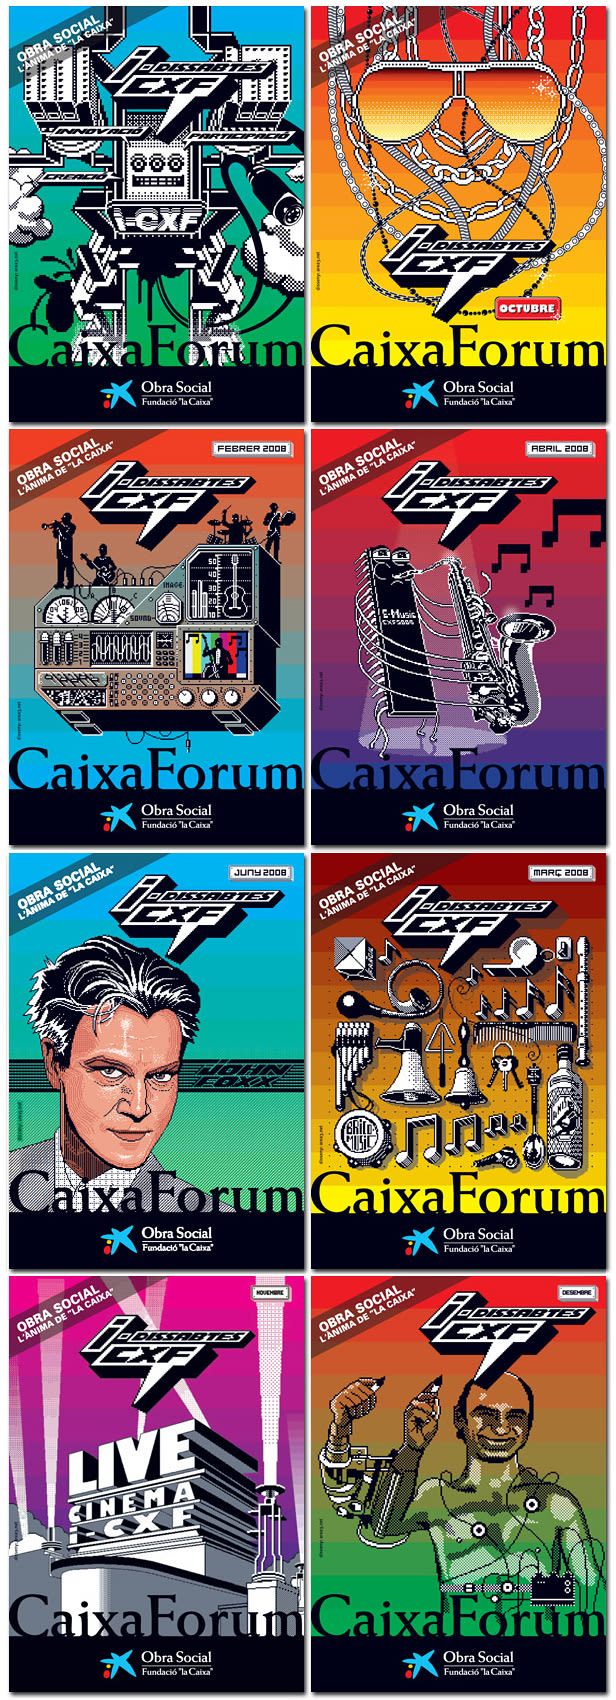 Postalex CXF Caixaforum 1